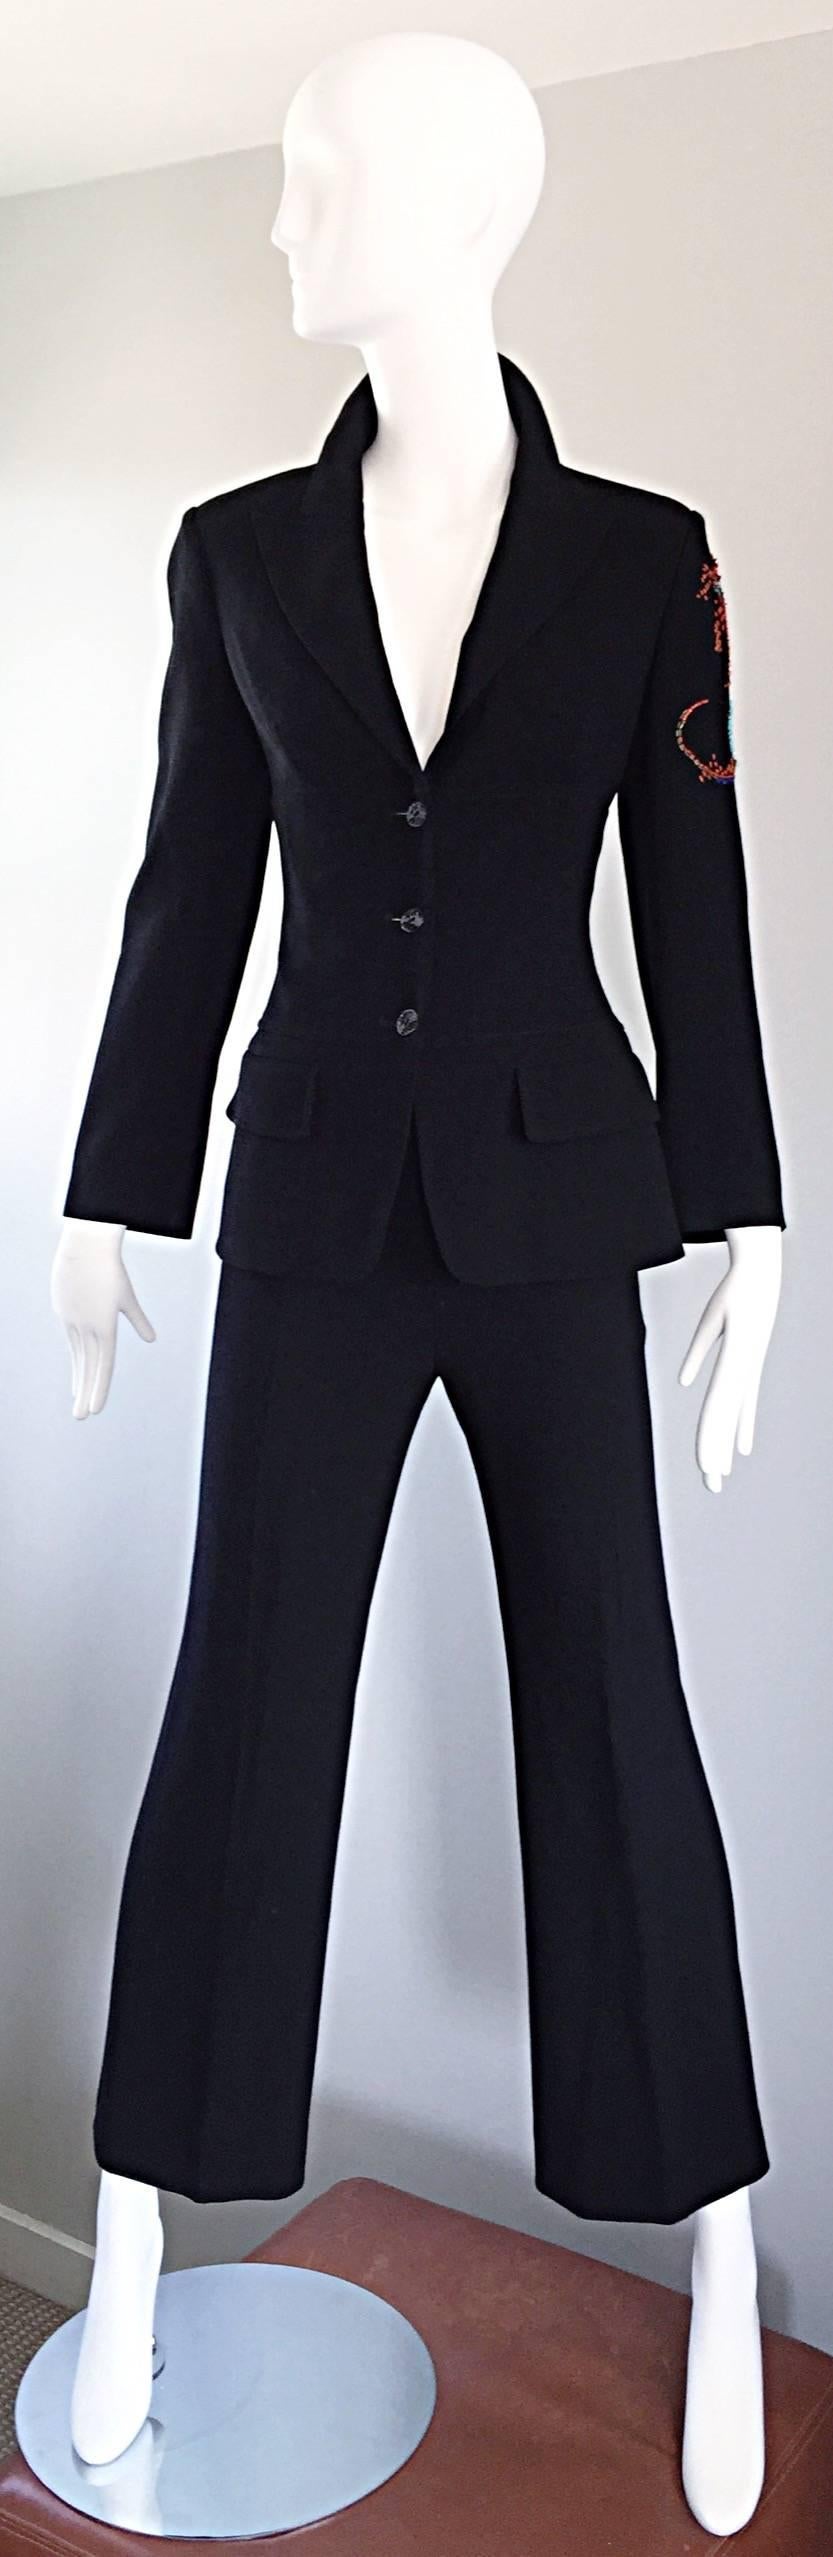 Spectacular Vintage Christian Lacroix Black Beaded Lizard Le Smoking Pant Suit For Sale 2